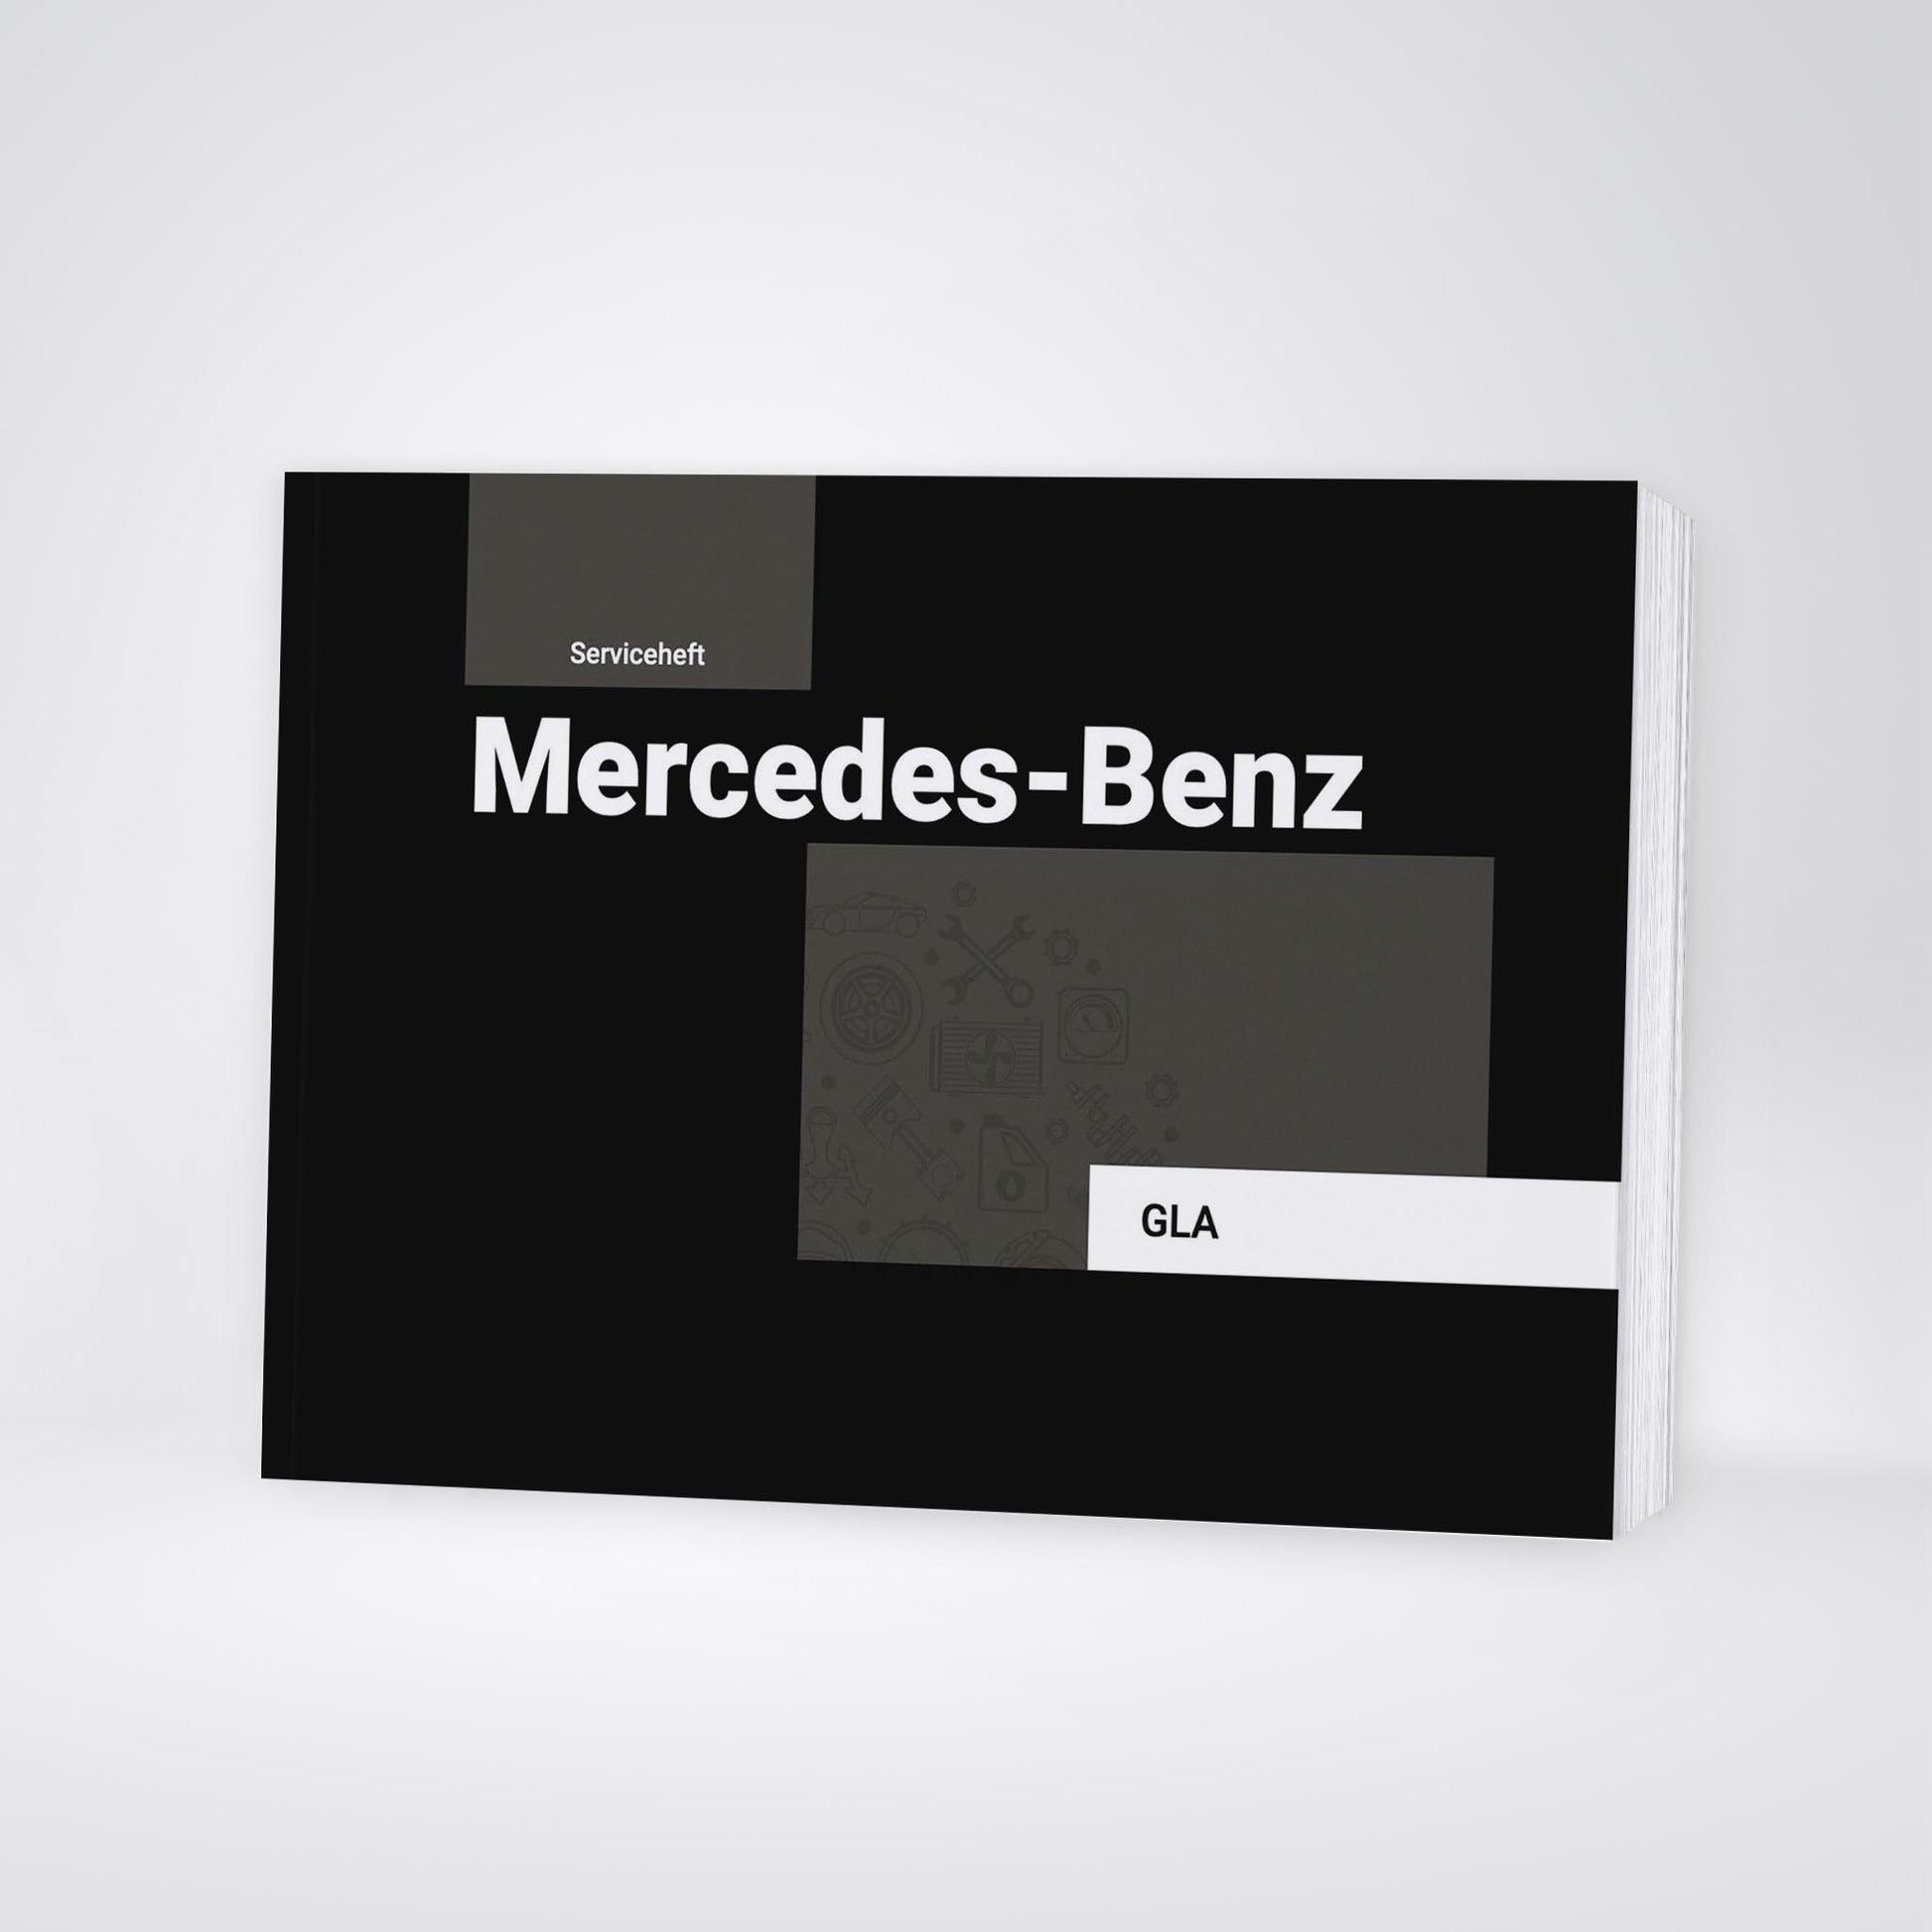 Serviceheft Mercedes-Benz GLA 2014 - 2019 – Car Manuals